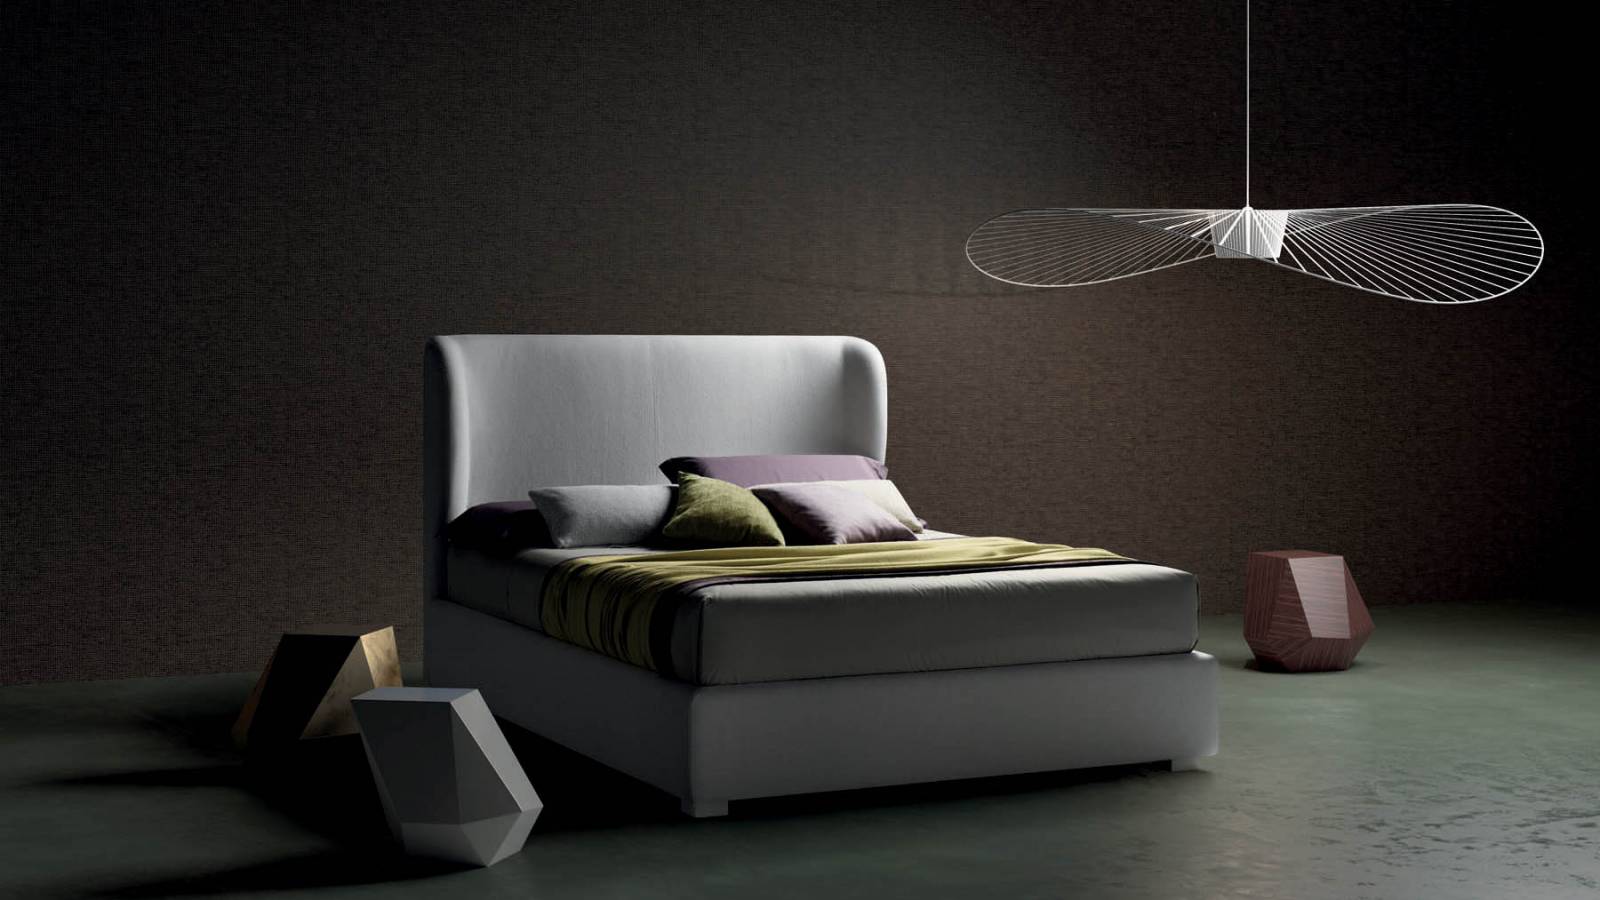 Az Emby franciaágy is azok közé az ágyak közé tartozik, amely egyszerre képes tompítani a modern stílusban berendezett szobákra jellemző geometrikus szigort